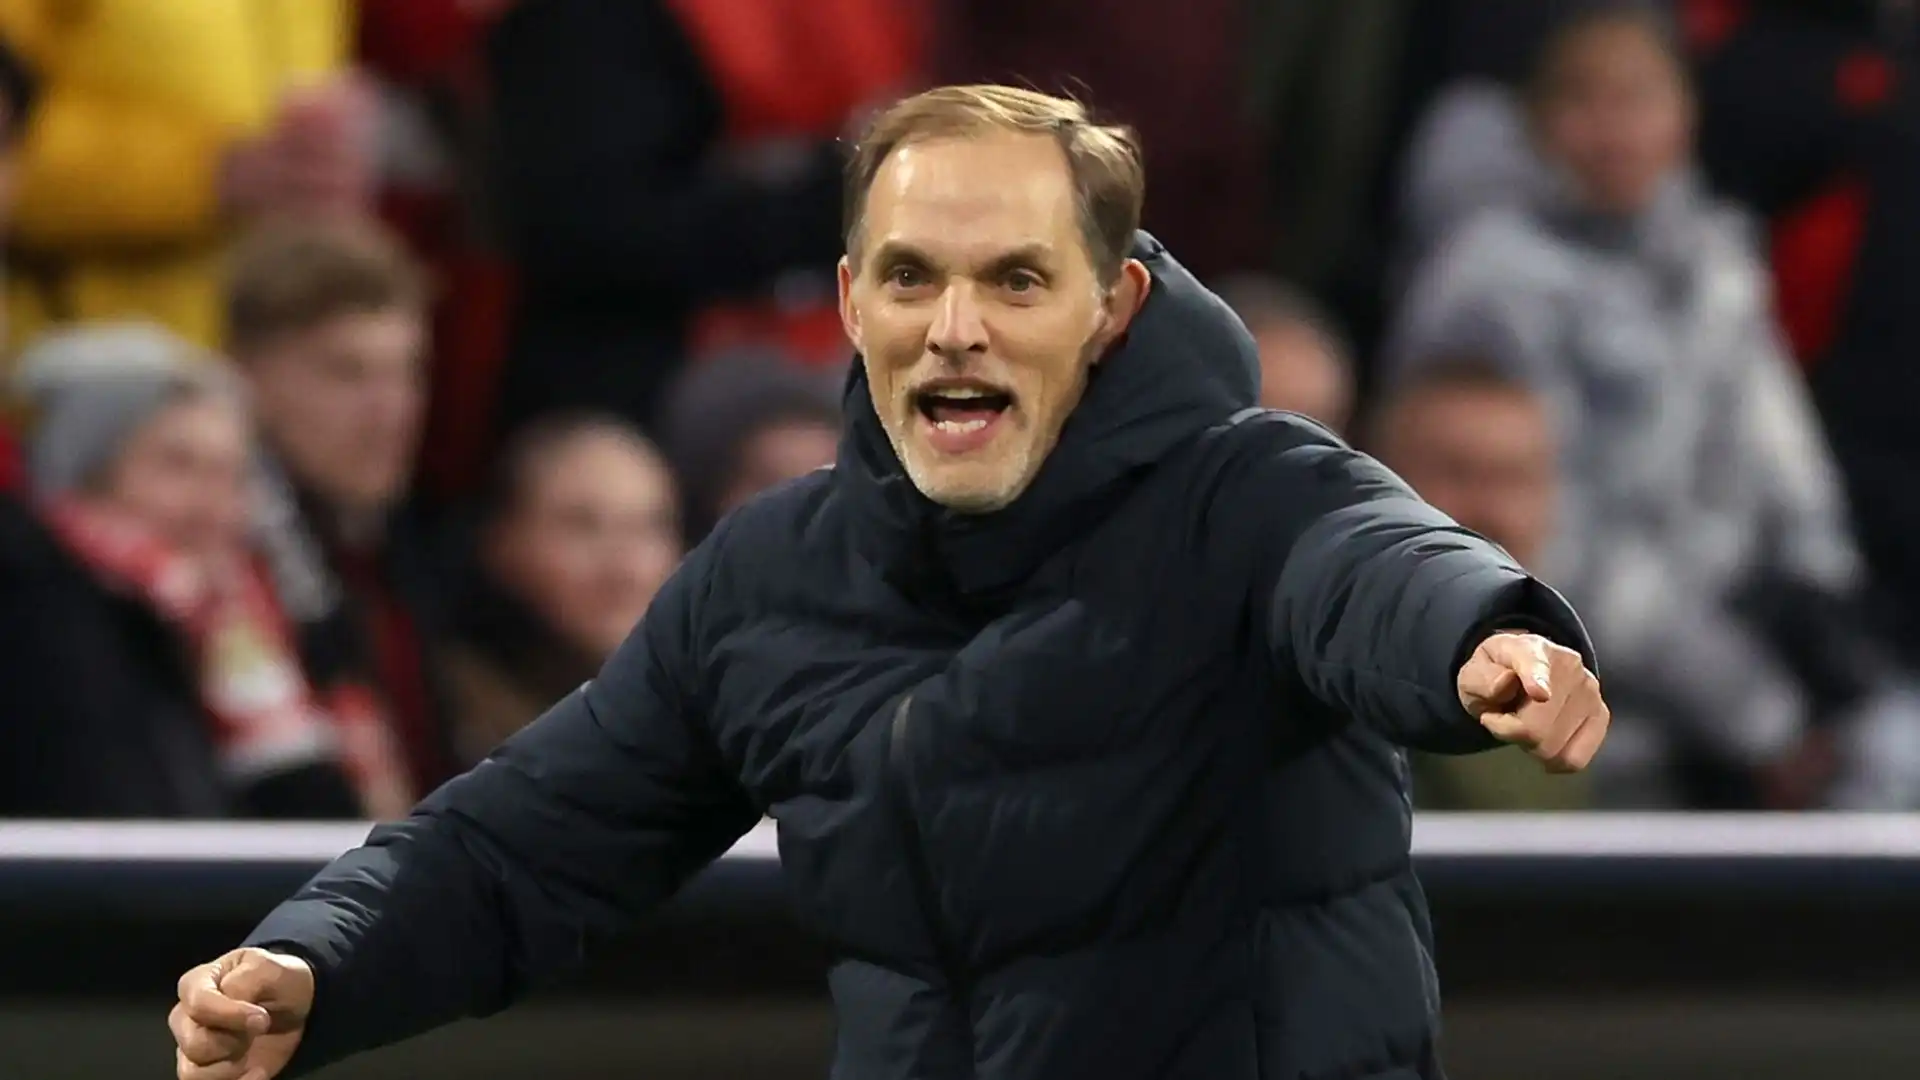 Il tecnico tedesco, che a febbraio ha annunciato che lascerà il club bavarese, è richiesto in Premier League